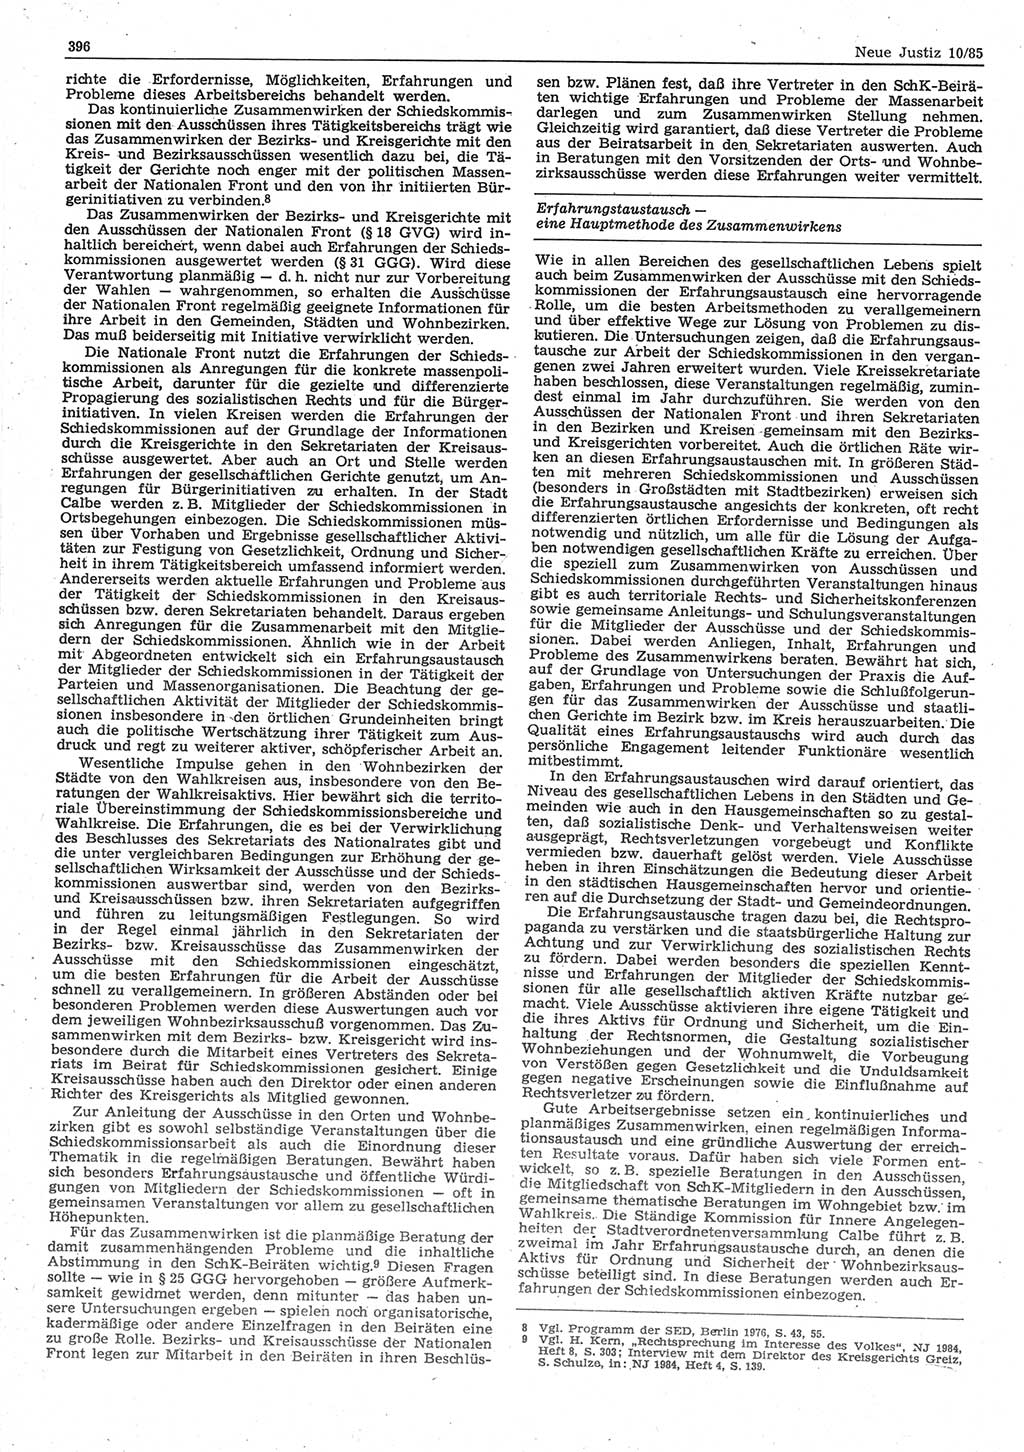 Neue Justiz (NJ), Zeitschrift für sozialistisches Recht und Gesetzlichkeit [Deutsche Demokratische Republik (DDR)], 39. Jahrgang 1985, Seite 396 (NJ DDR 1985, S. 396)